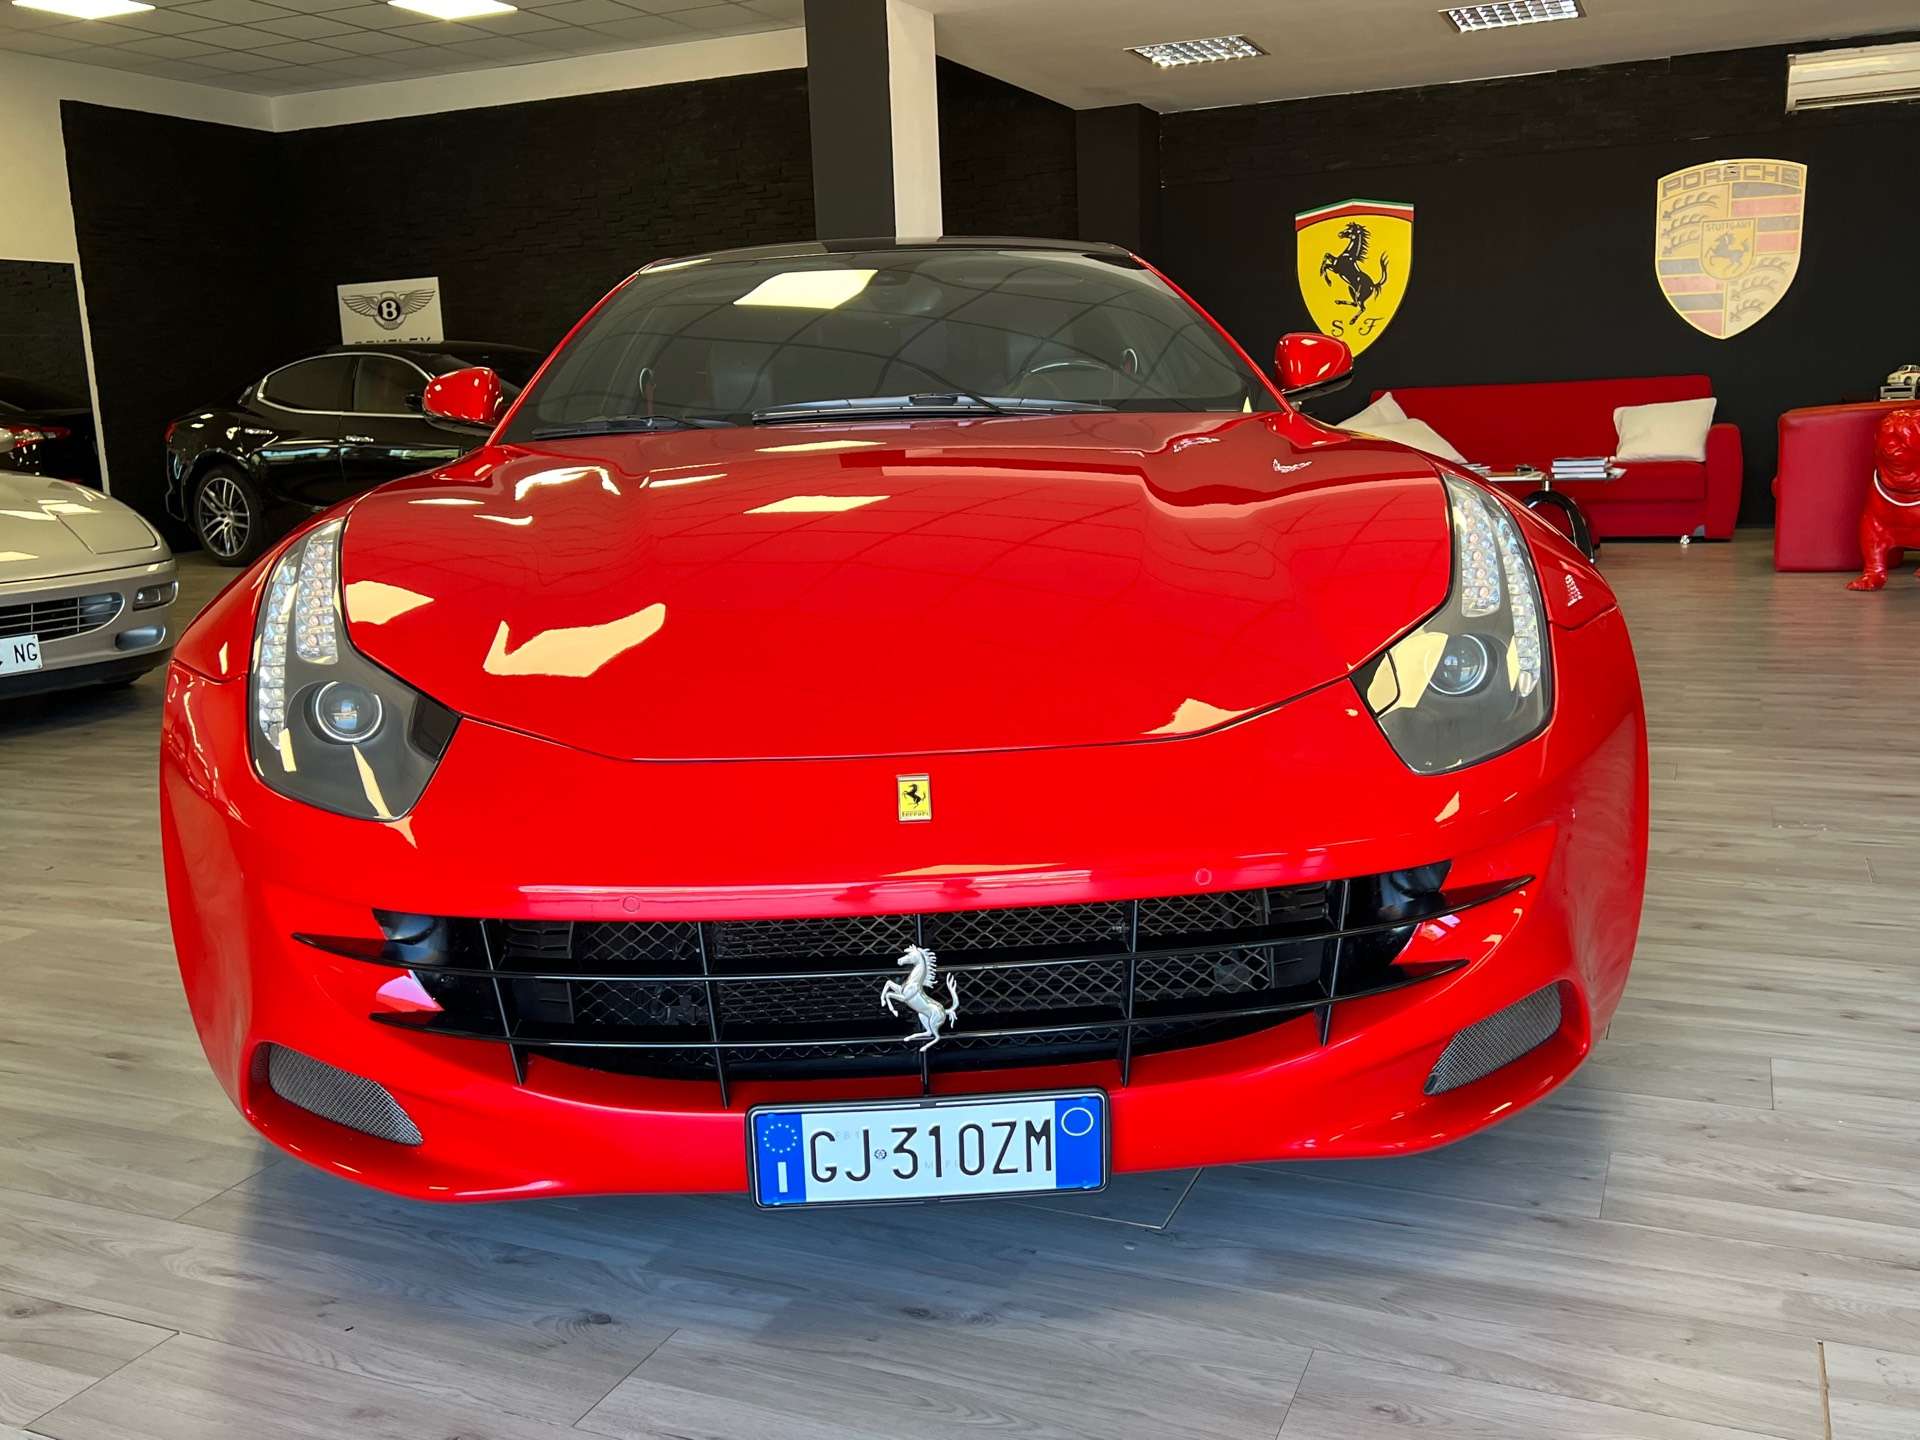 Ferrari FF Coupe in Red used in Sirmione - Brescia for € 1,349,000.-